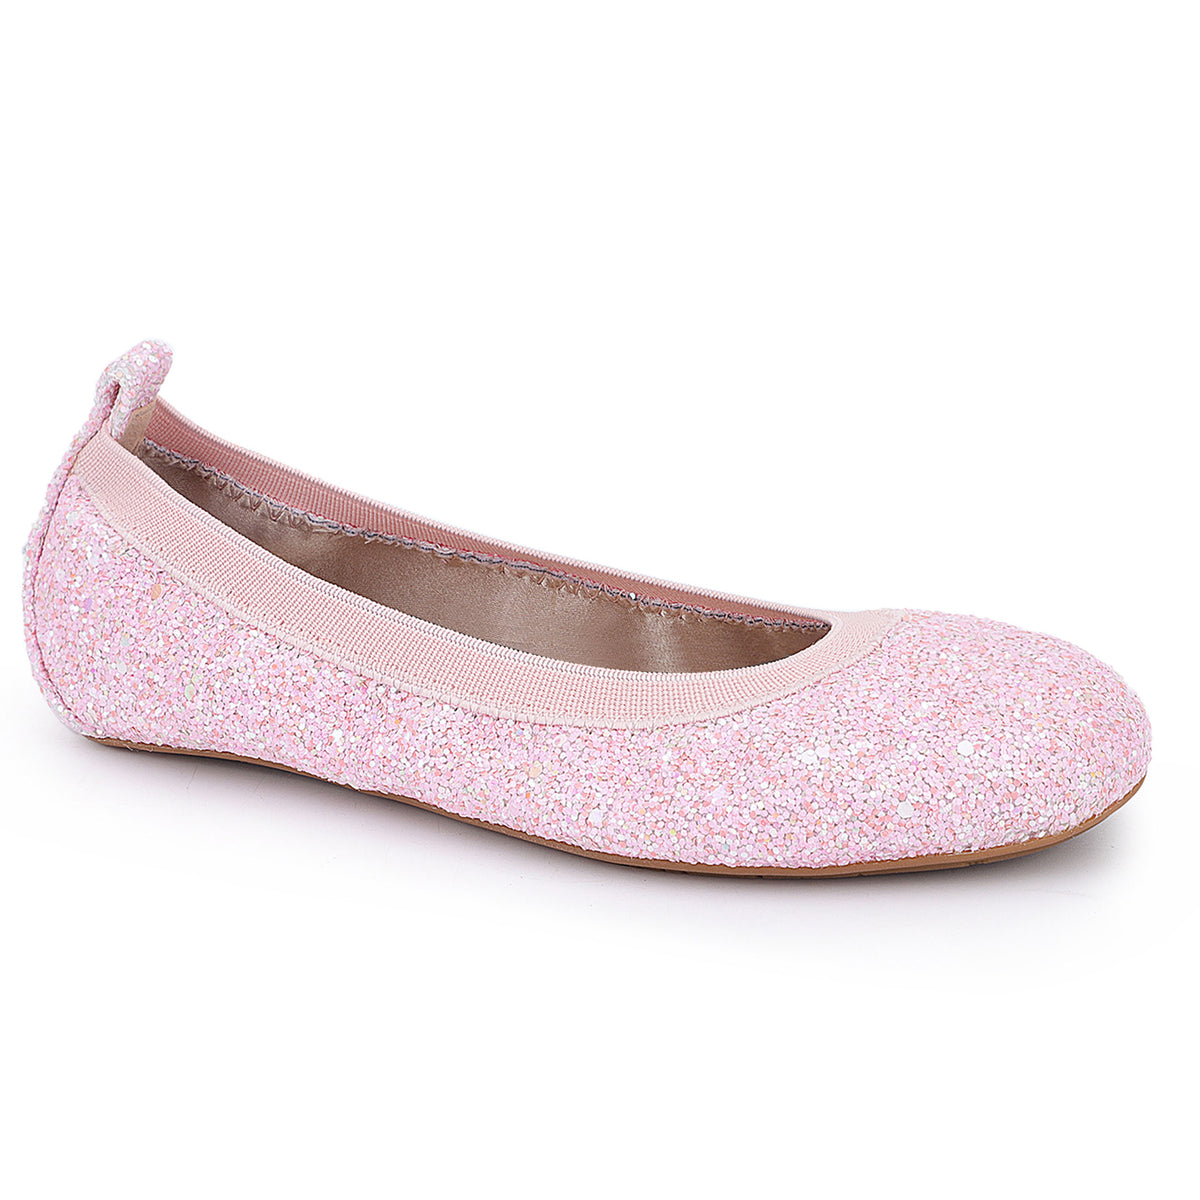 Miss Samara Ballet Flat in Light Pink Glitter - Kids